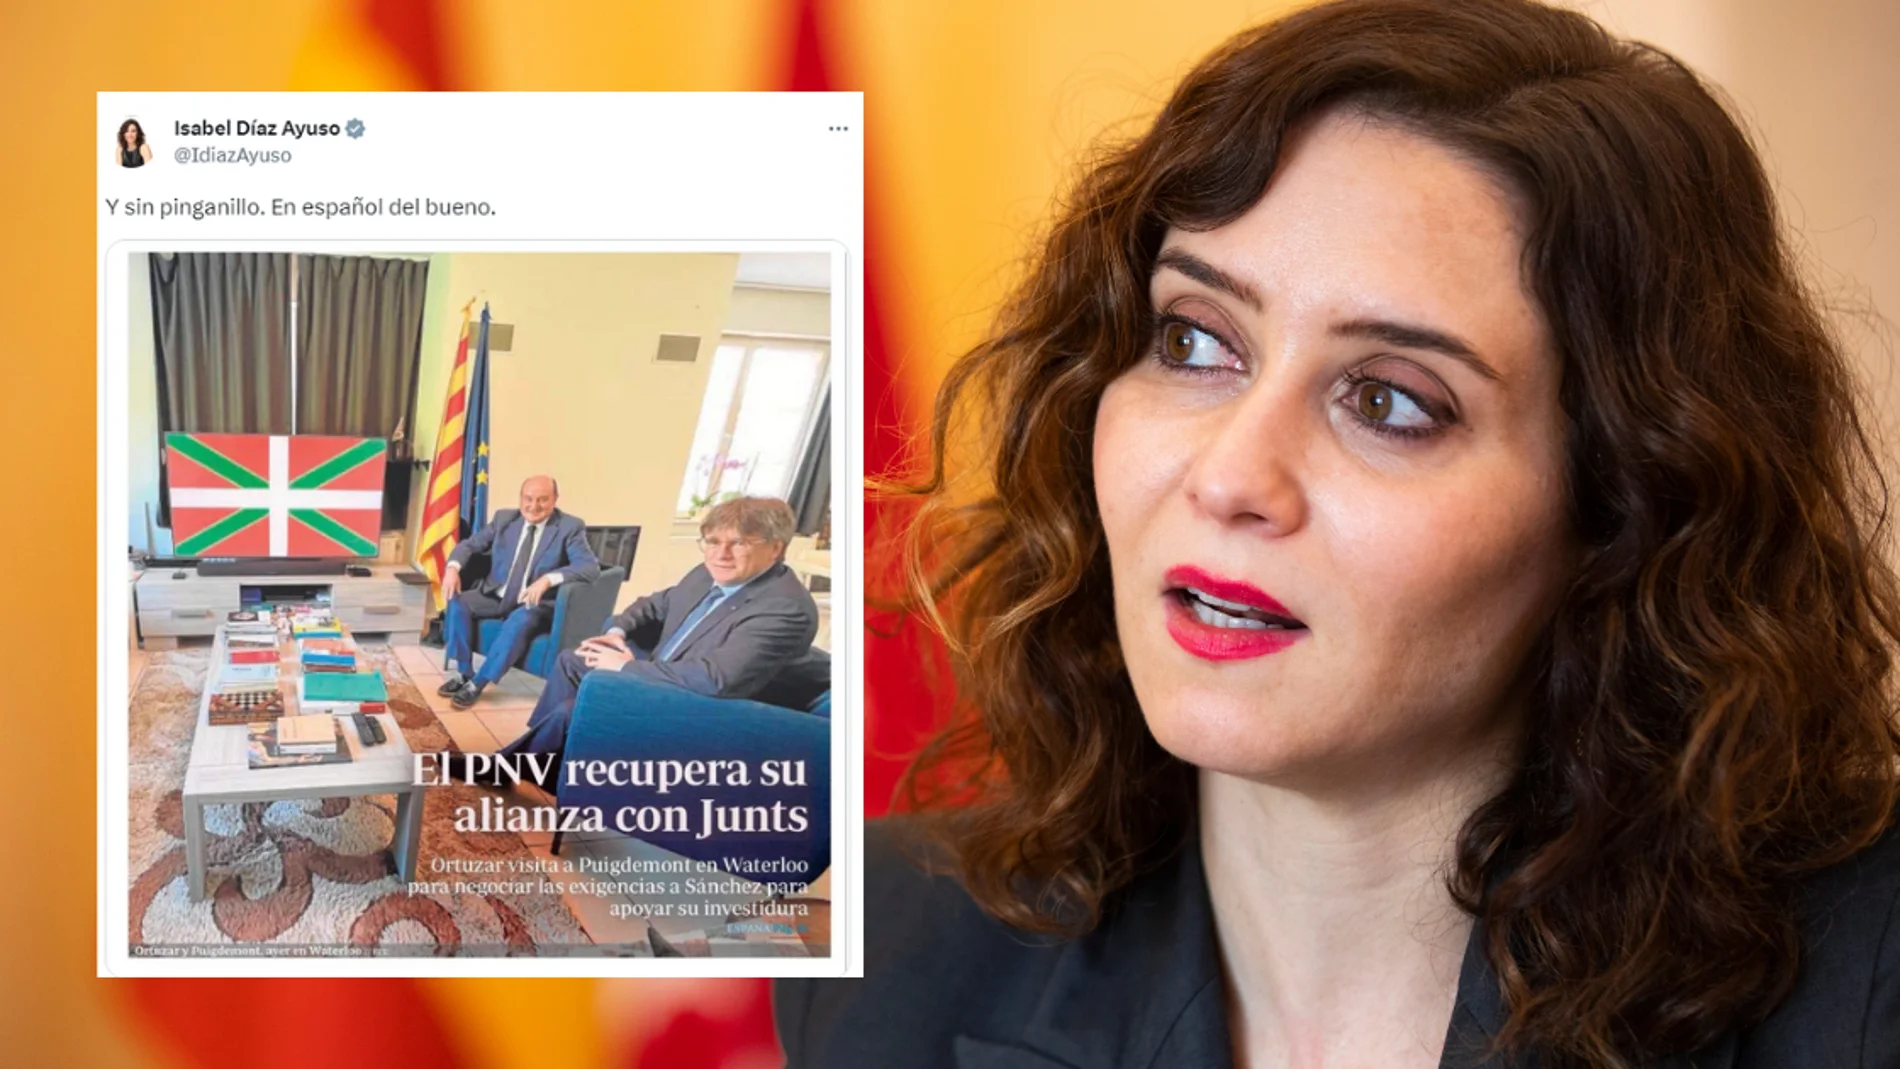 "Y sin pinganillo. En español del bueno" : La respuesta de Ayuso sobre la reunión entre Puigdemont y Ortuzar